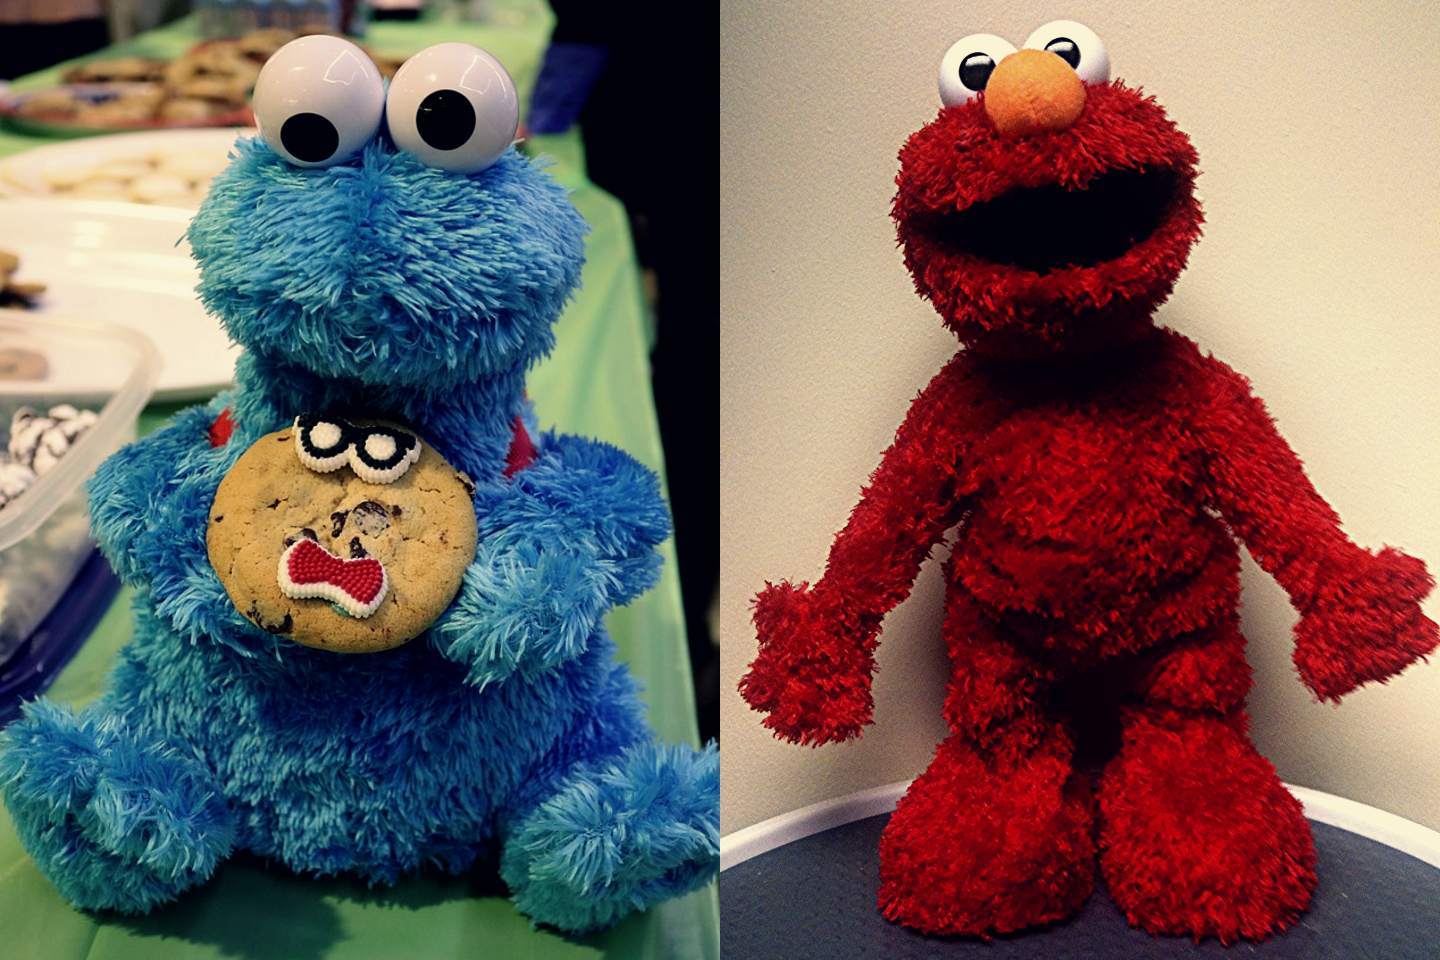 La poupée Cookie Monster et la poupée Elmo